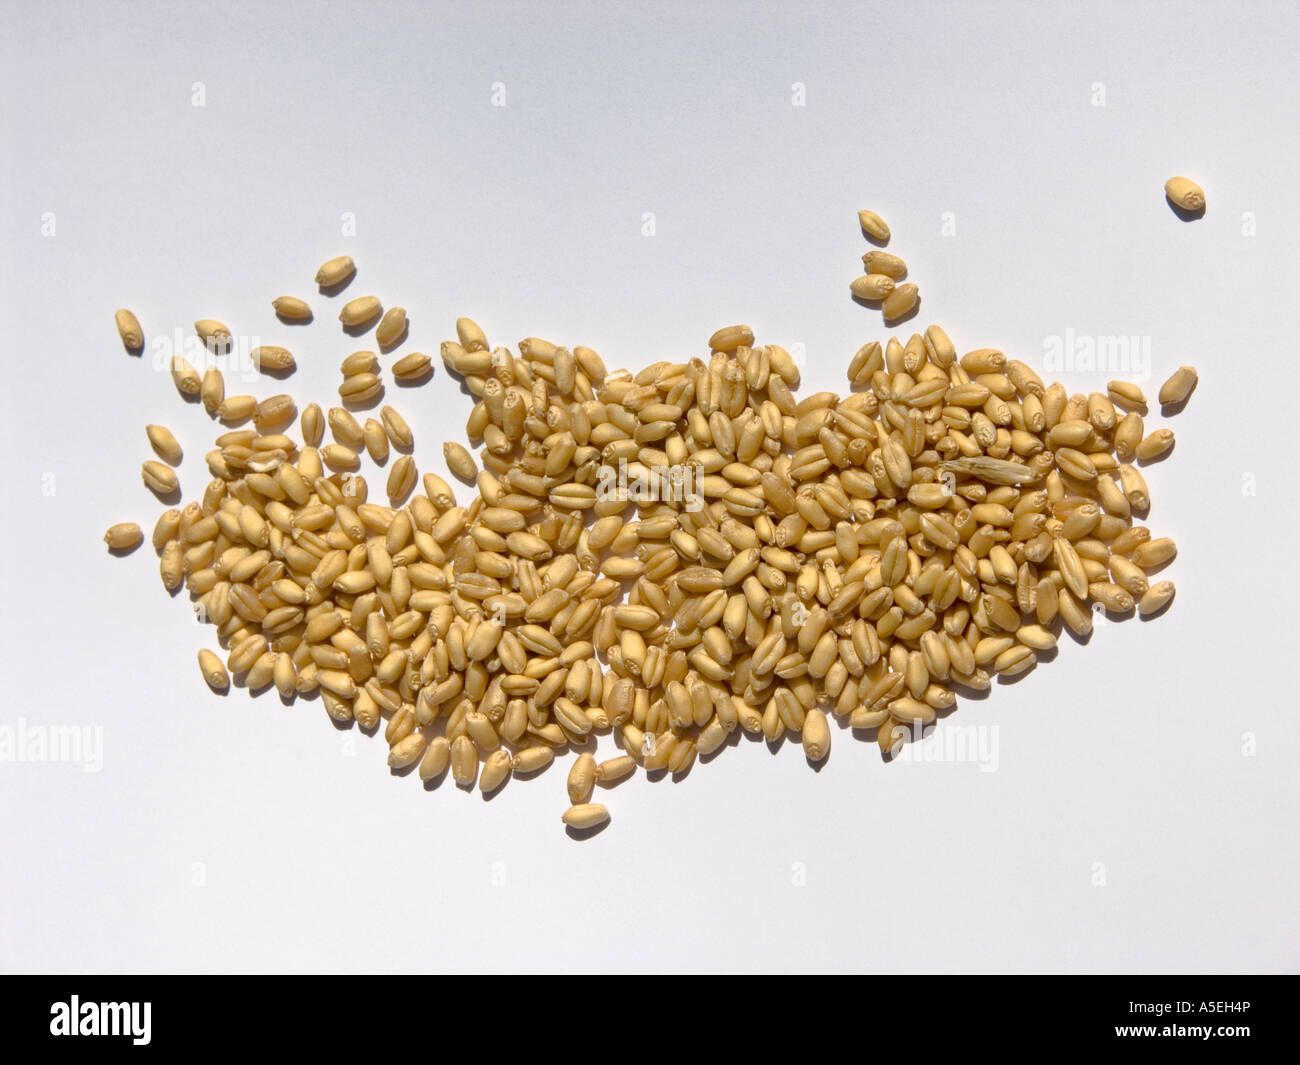 Sammlung von Getreide Körner - Hafer vor einem hellen farbigen Hintergrund Stockfoto